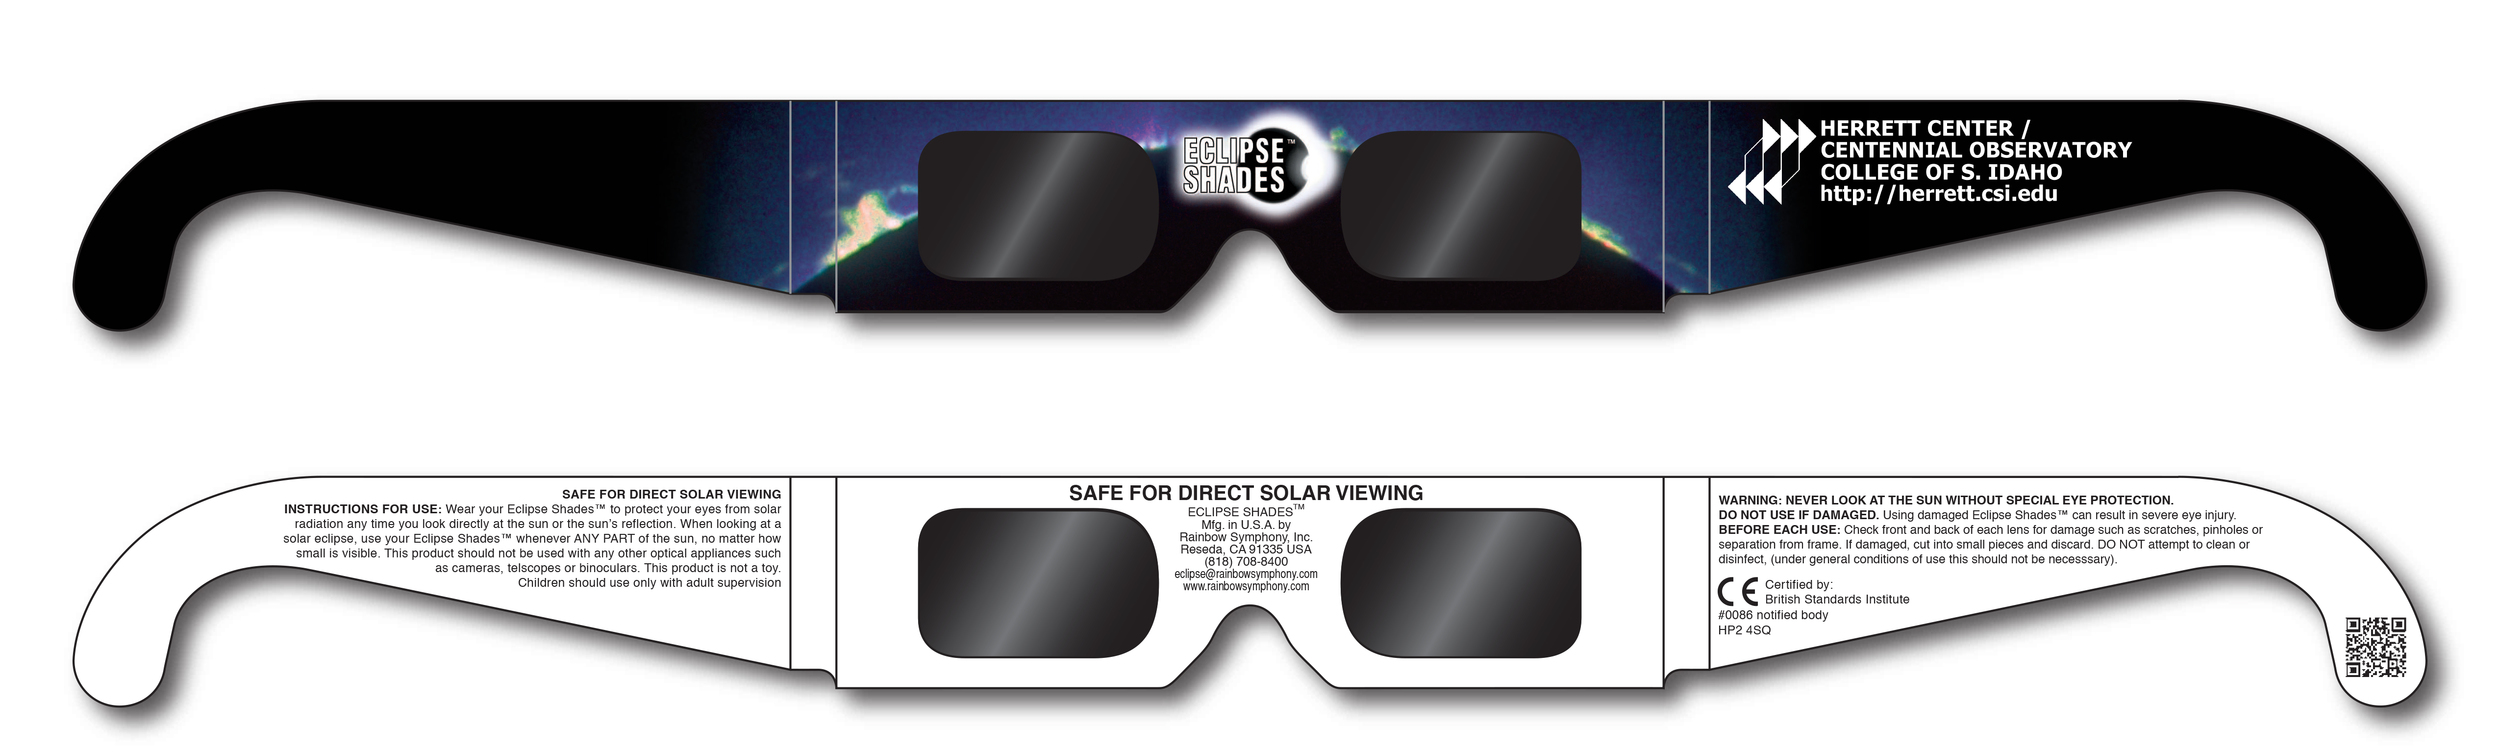 Centennial_Observatory_Eclipse_Glasses.jpg